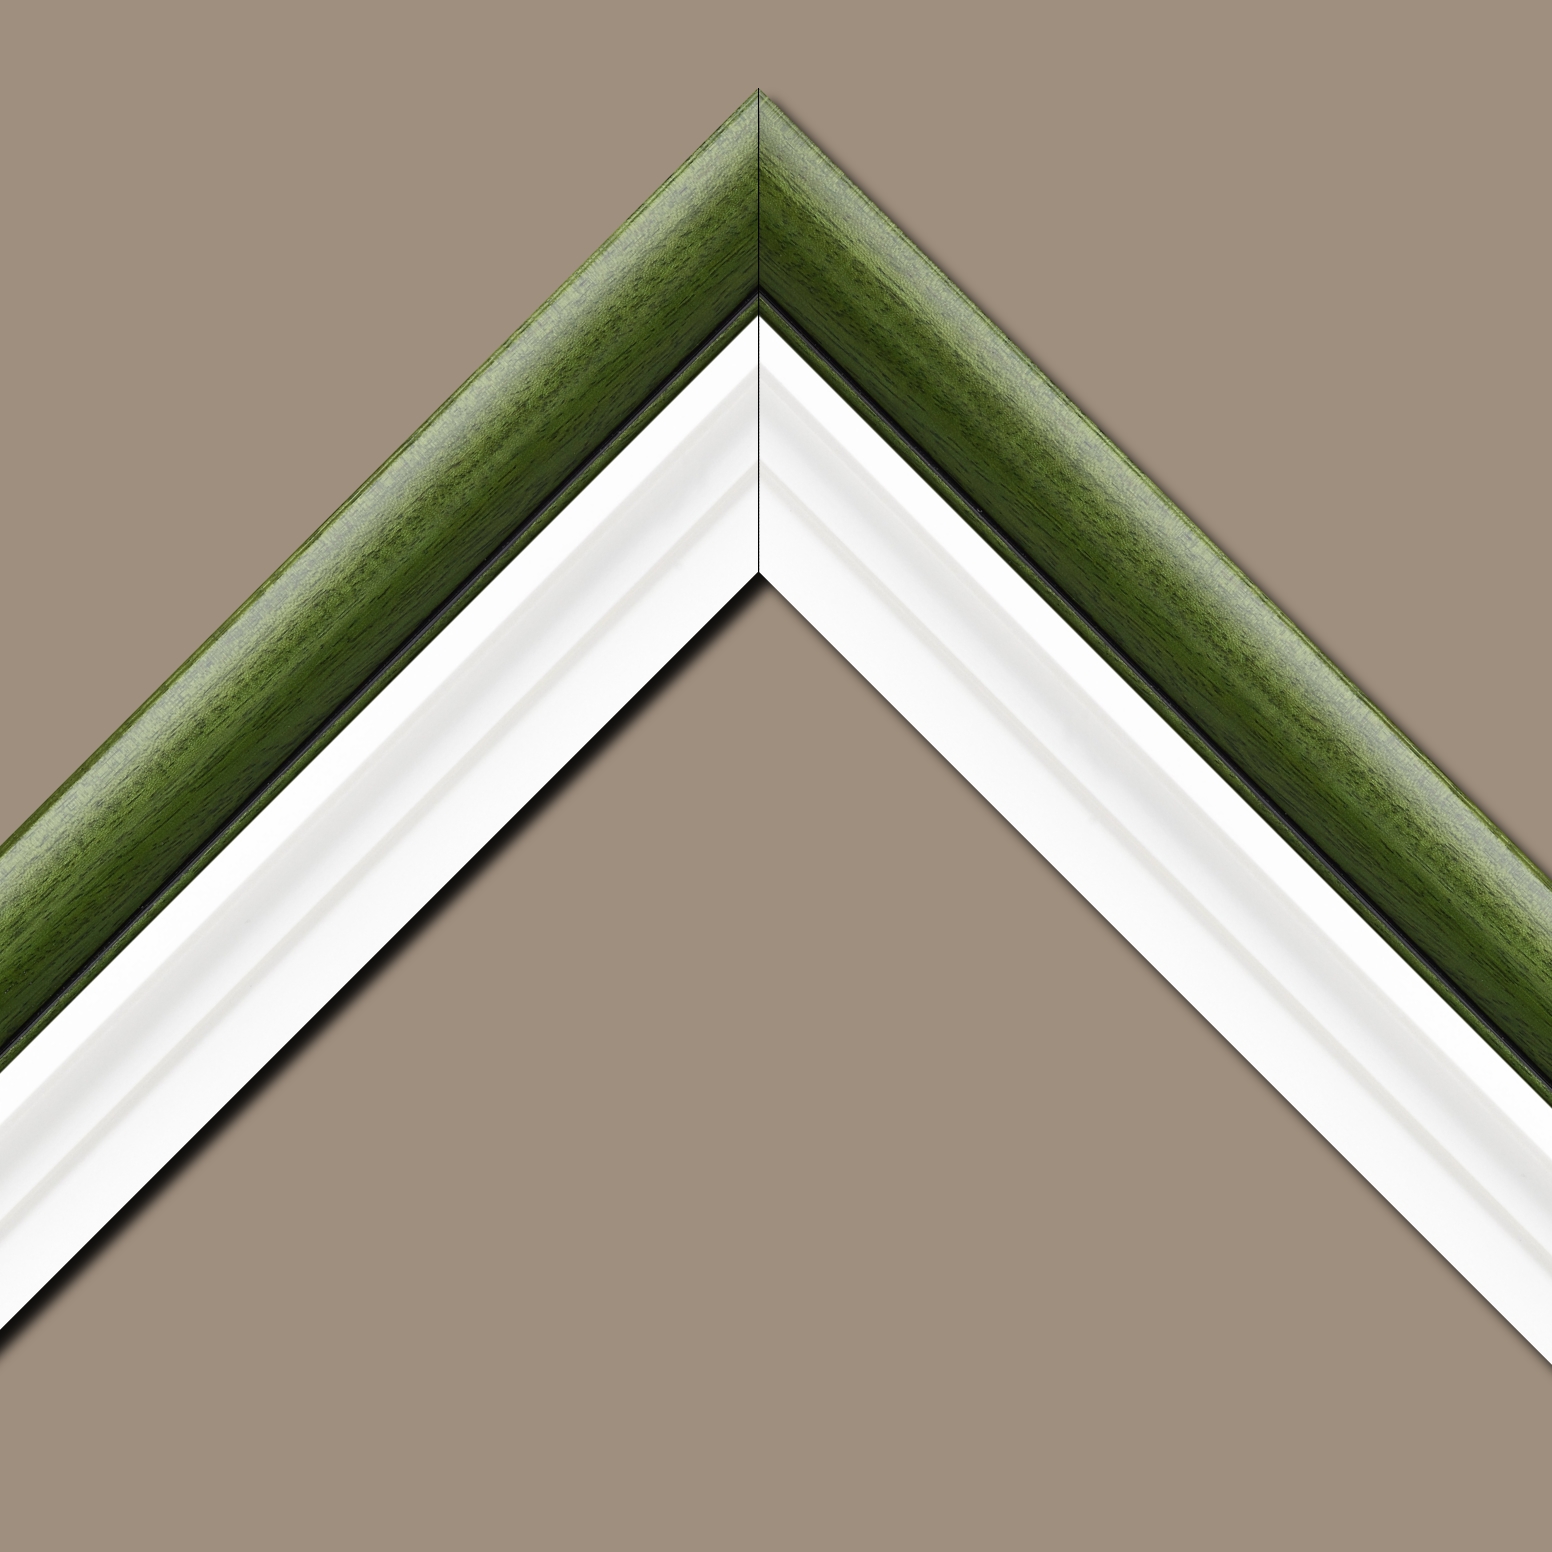 Caisse américaine pour peintures  americaine bois blanc vert — 34 x 46